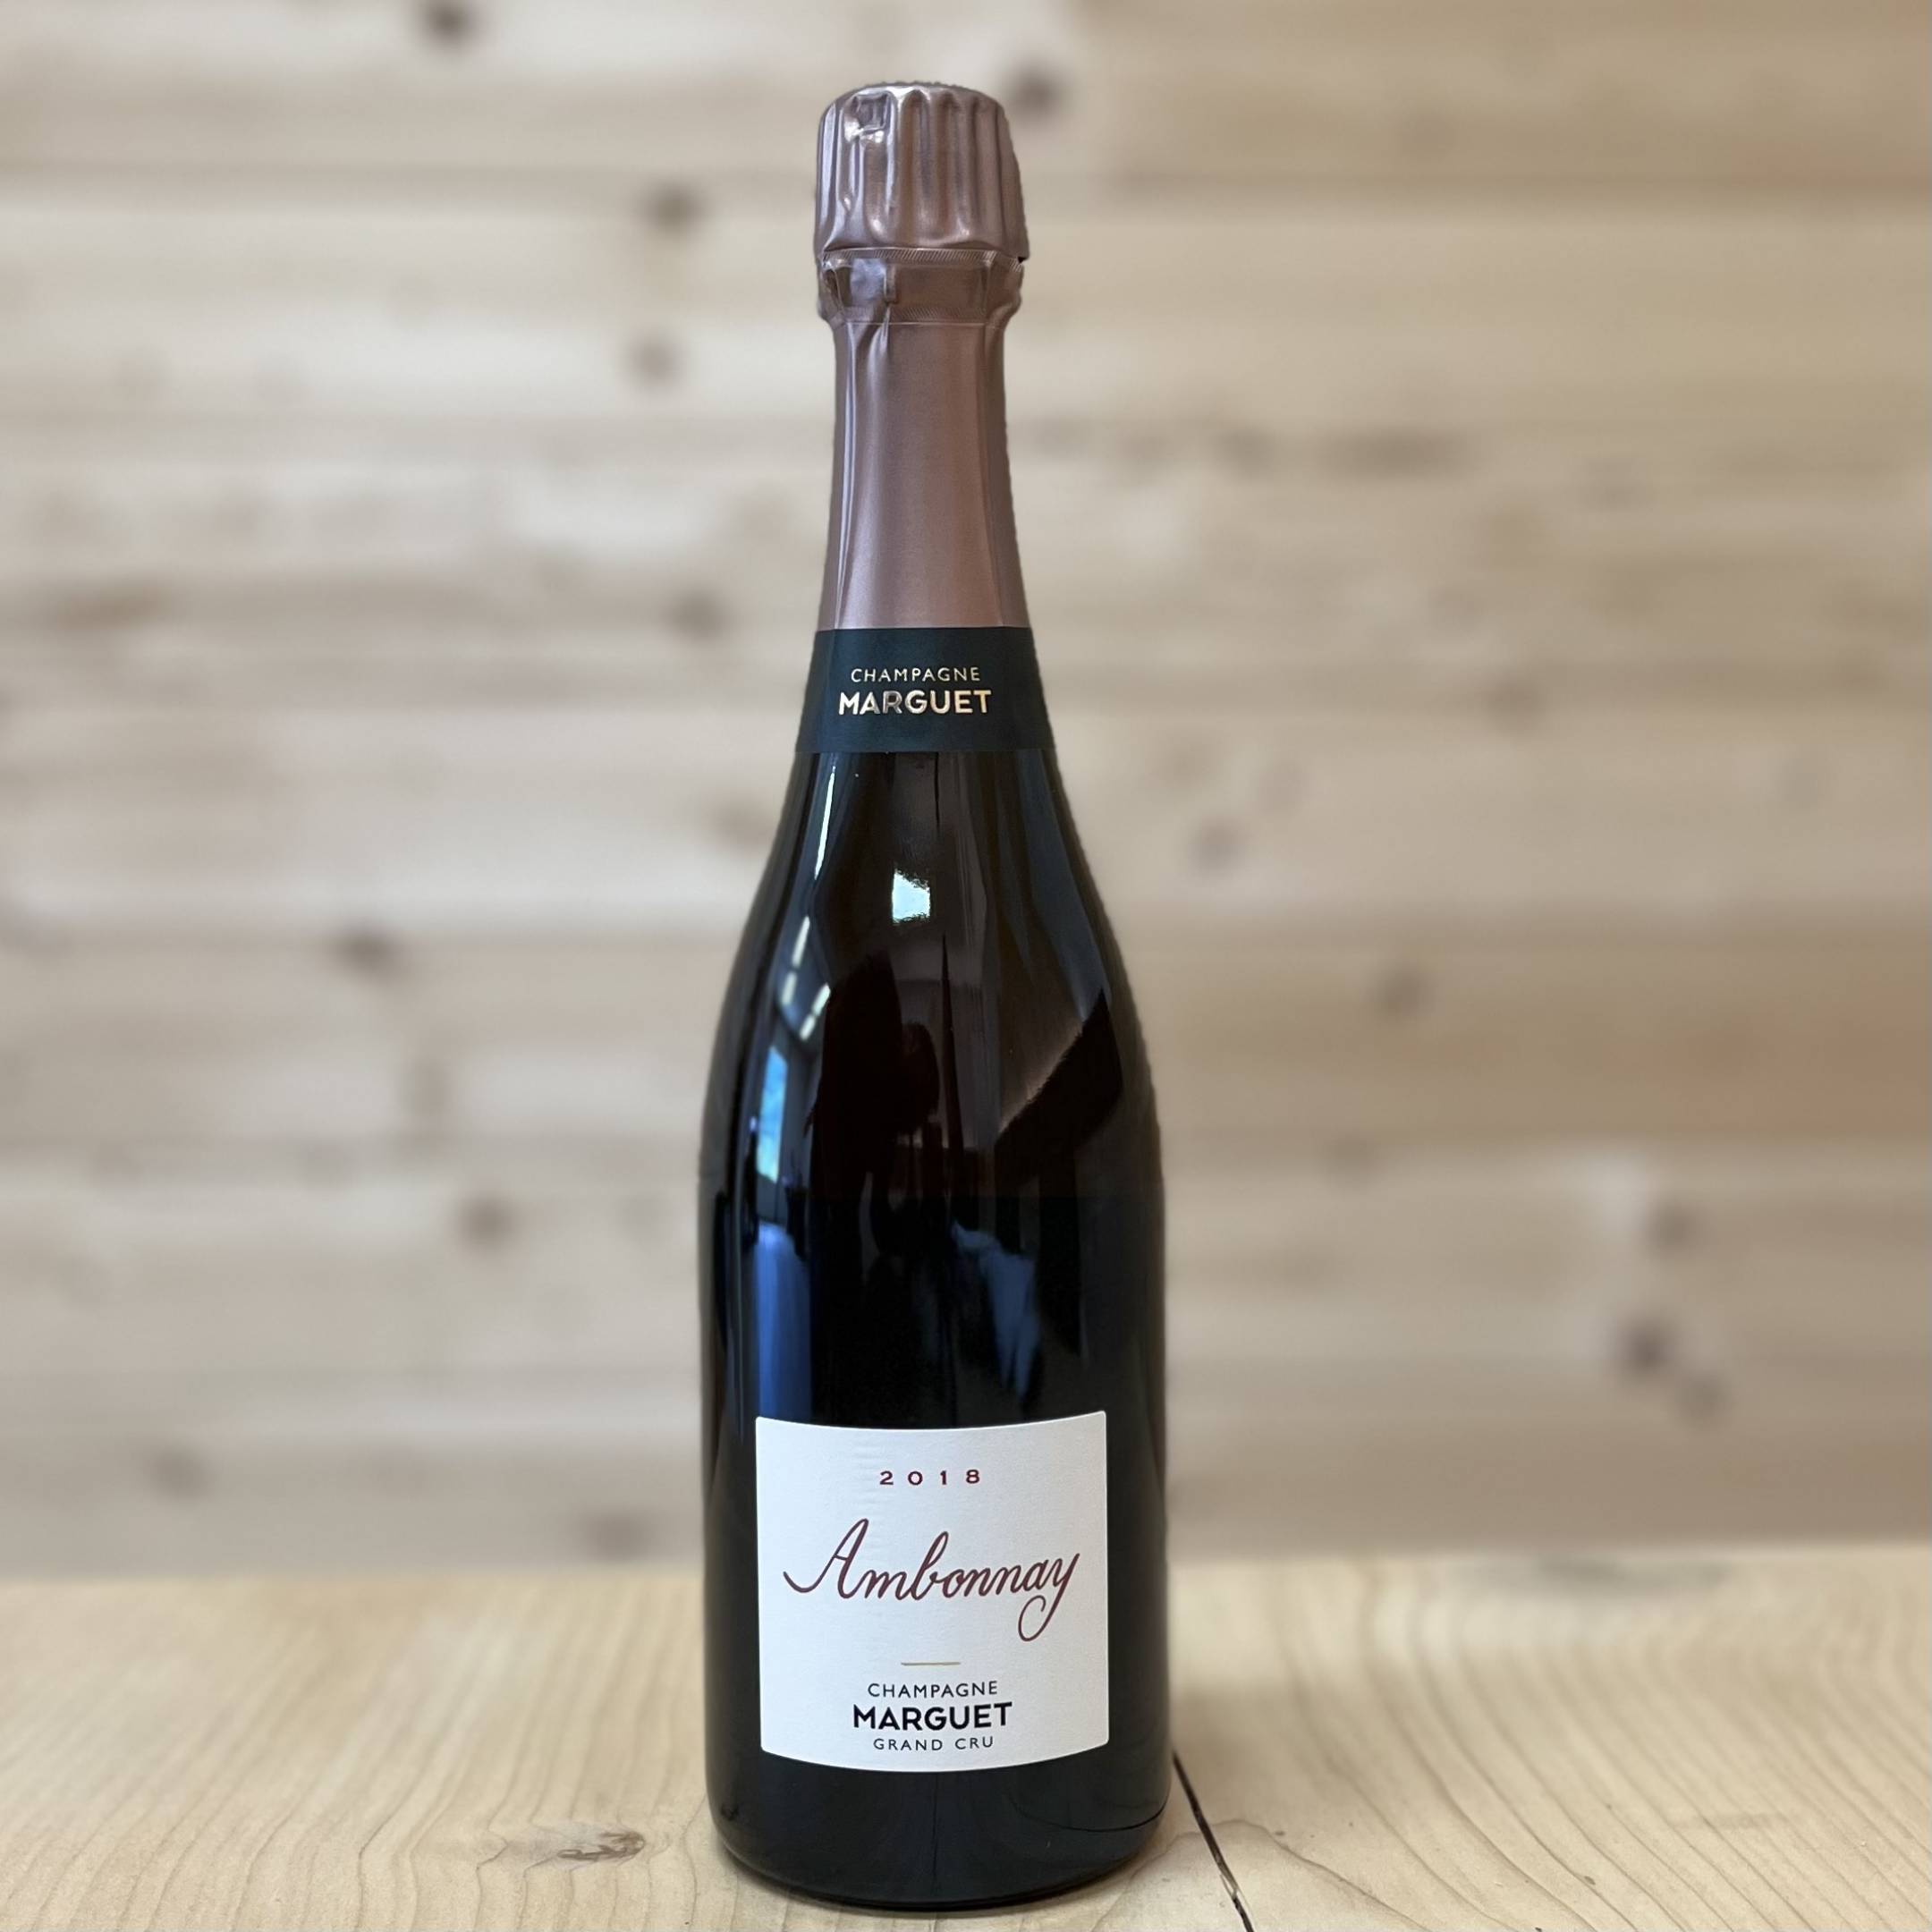 Marguet Champagne Ambonnay rosè Grand cru 2018